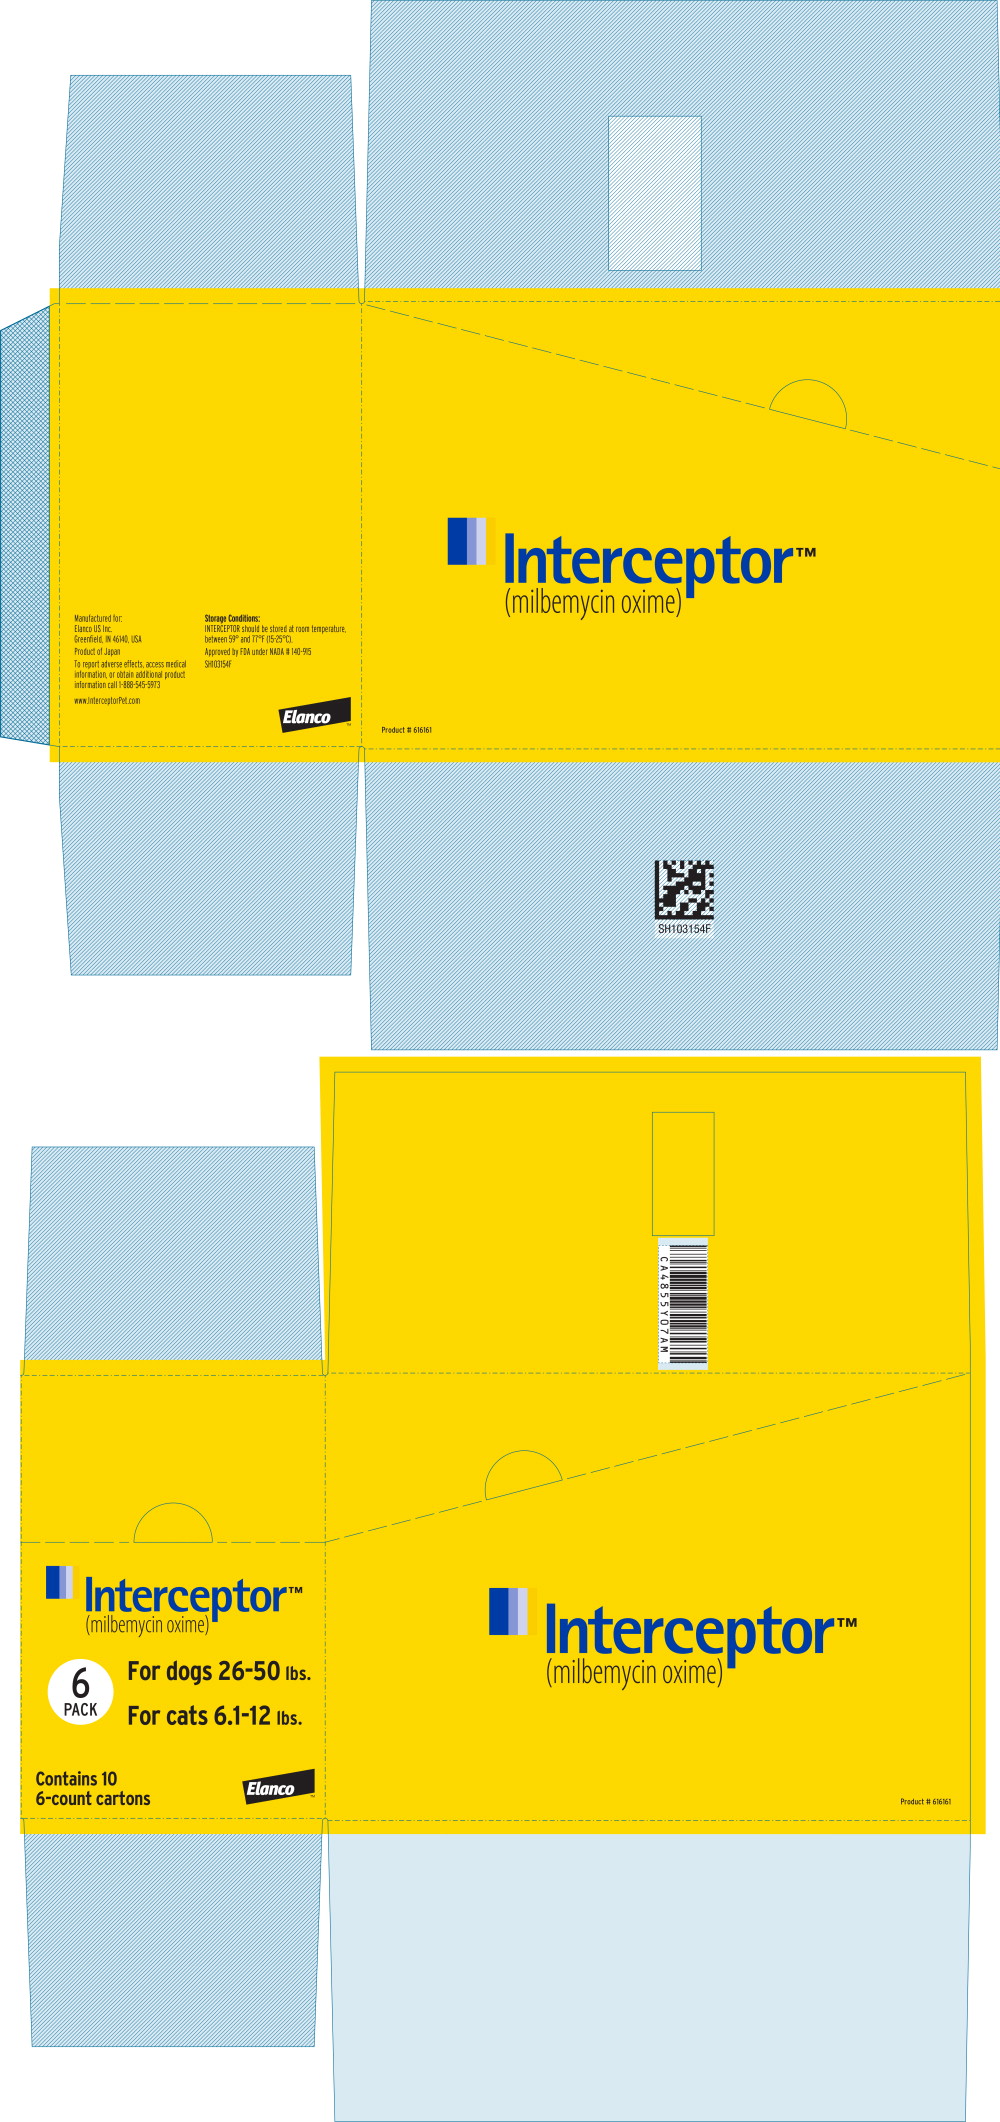 Principal Display Panel - Interceptor 11.5 mg Box Label
